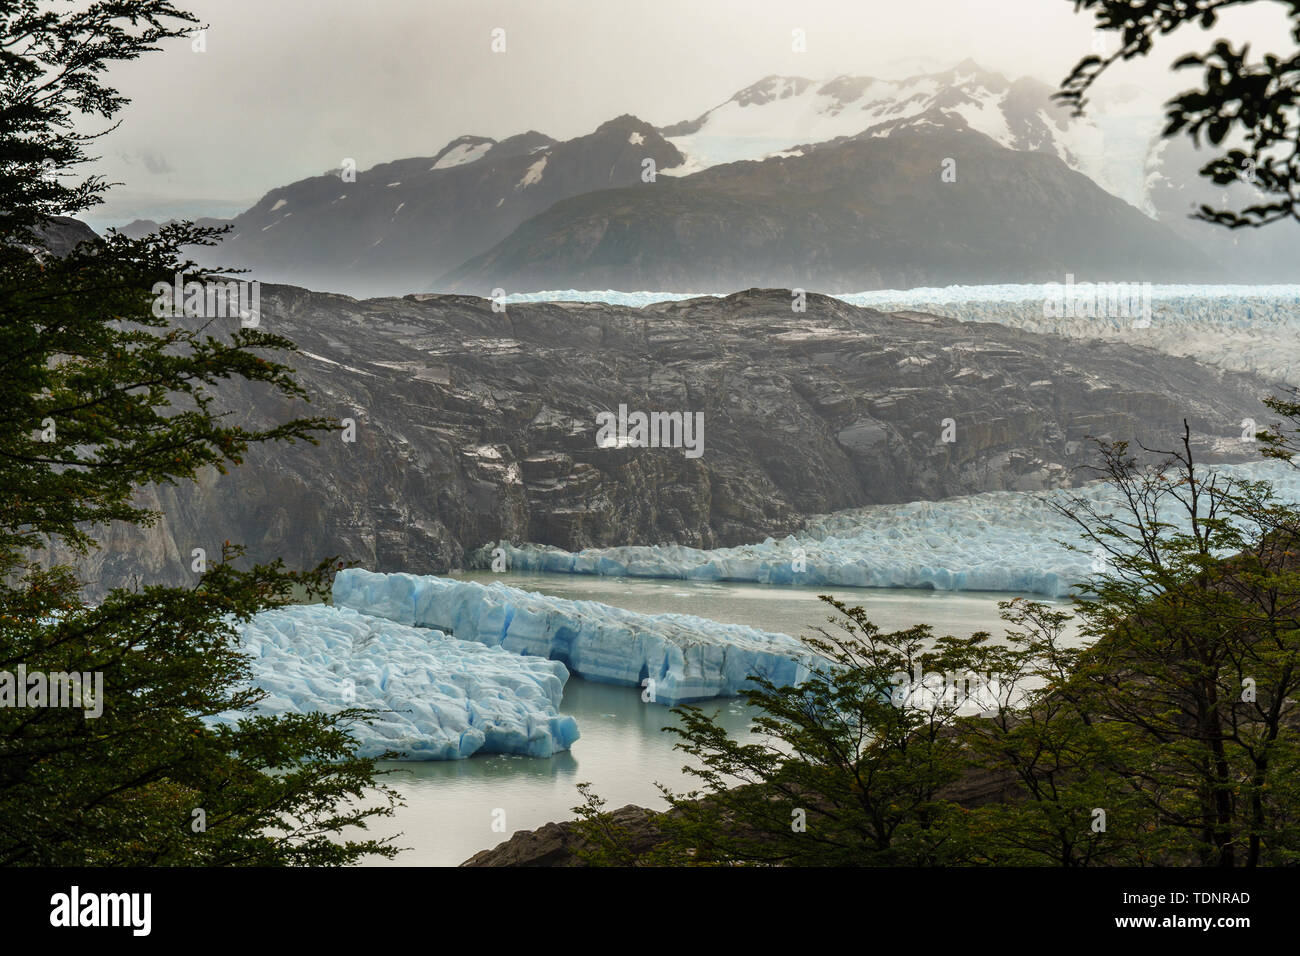 Trek de Torres del Paine en Patagonie, au Chili, en Amérique du Sud Banque D'Images